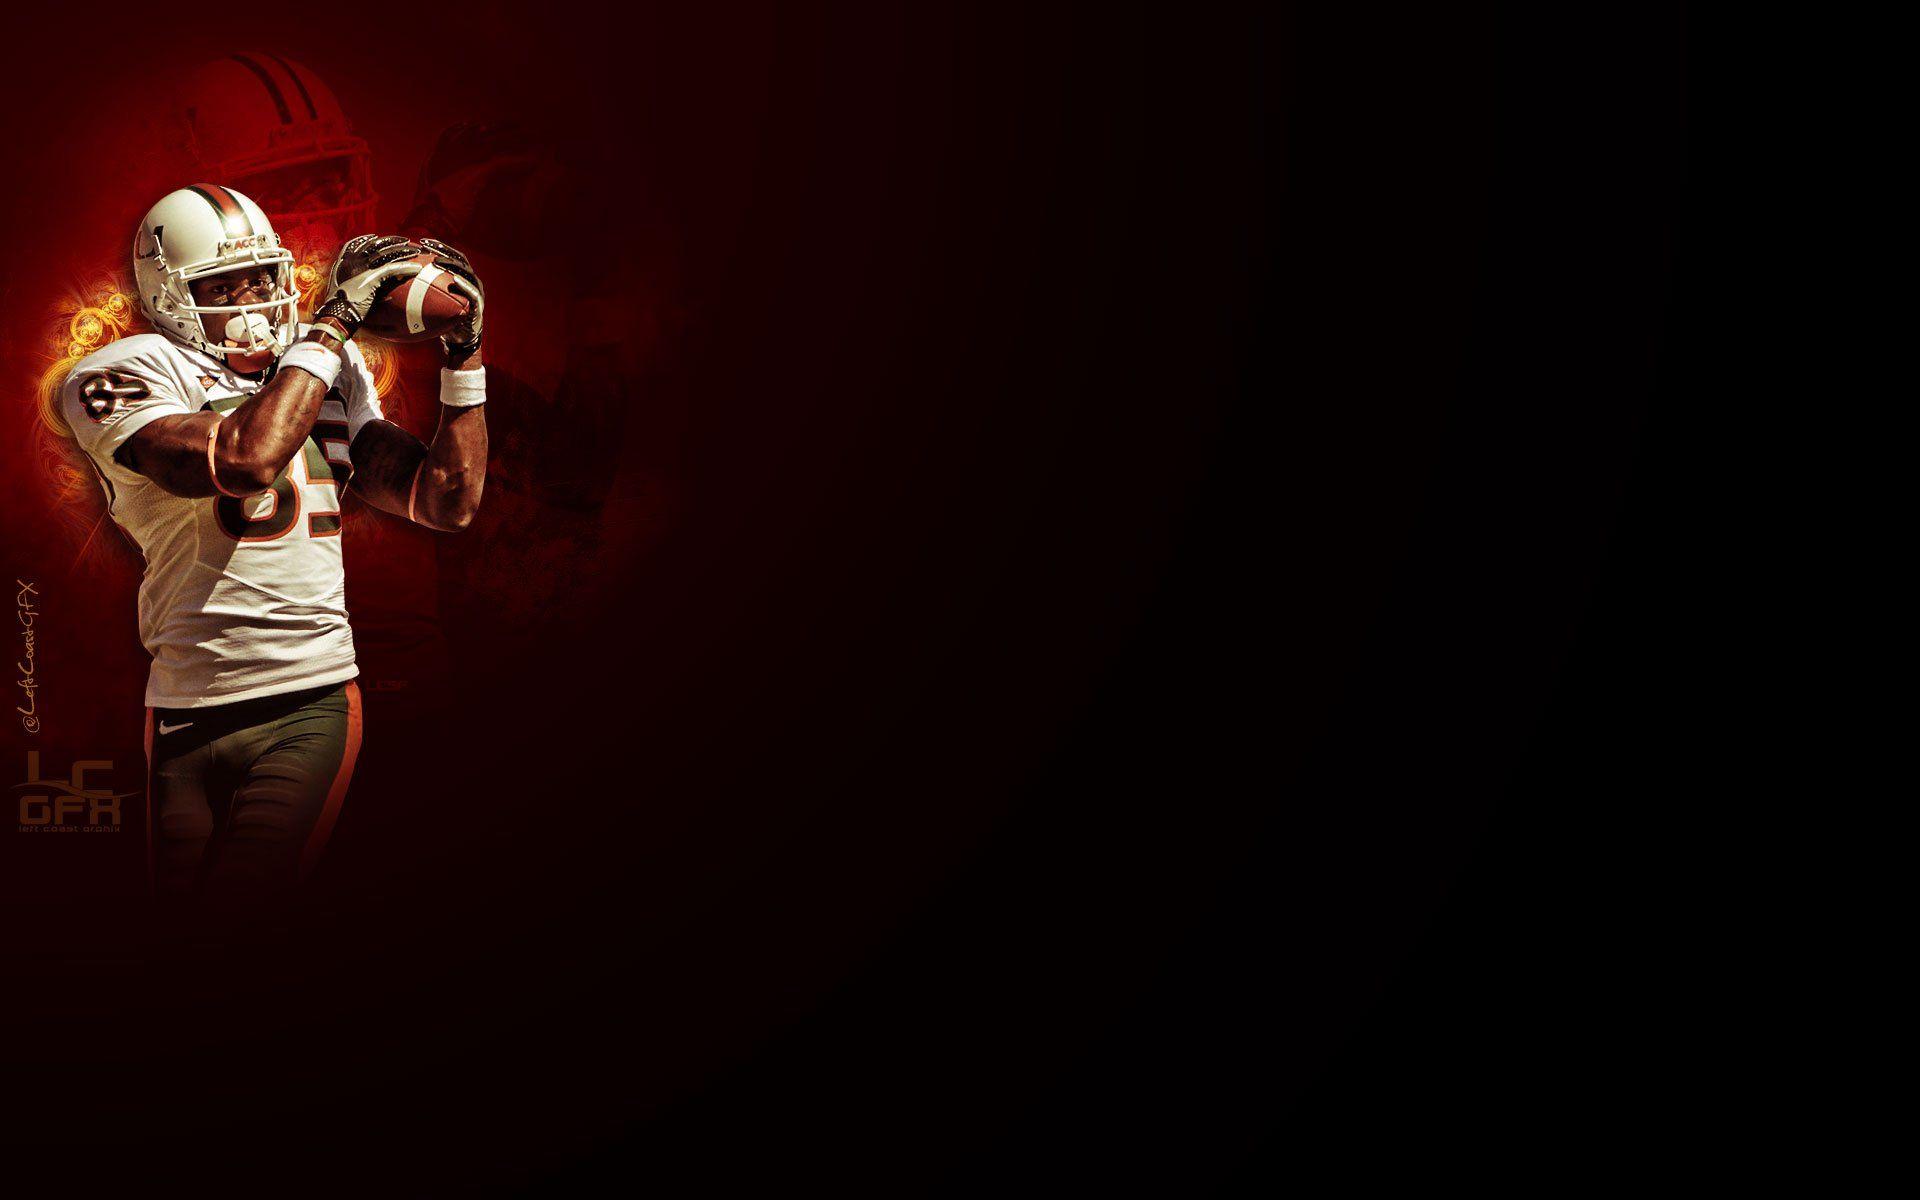 Desktop Redskins HD Wallpaper. Wallpaper, Background, Image